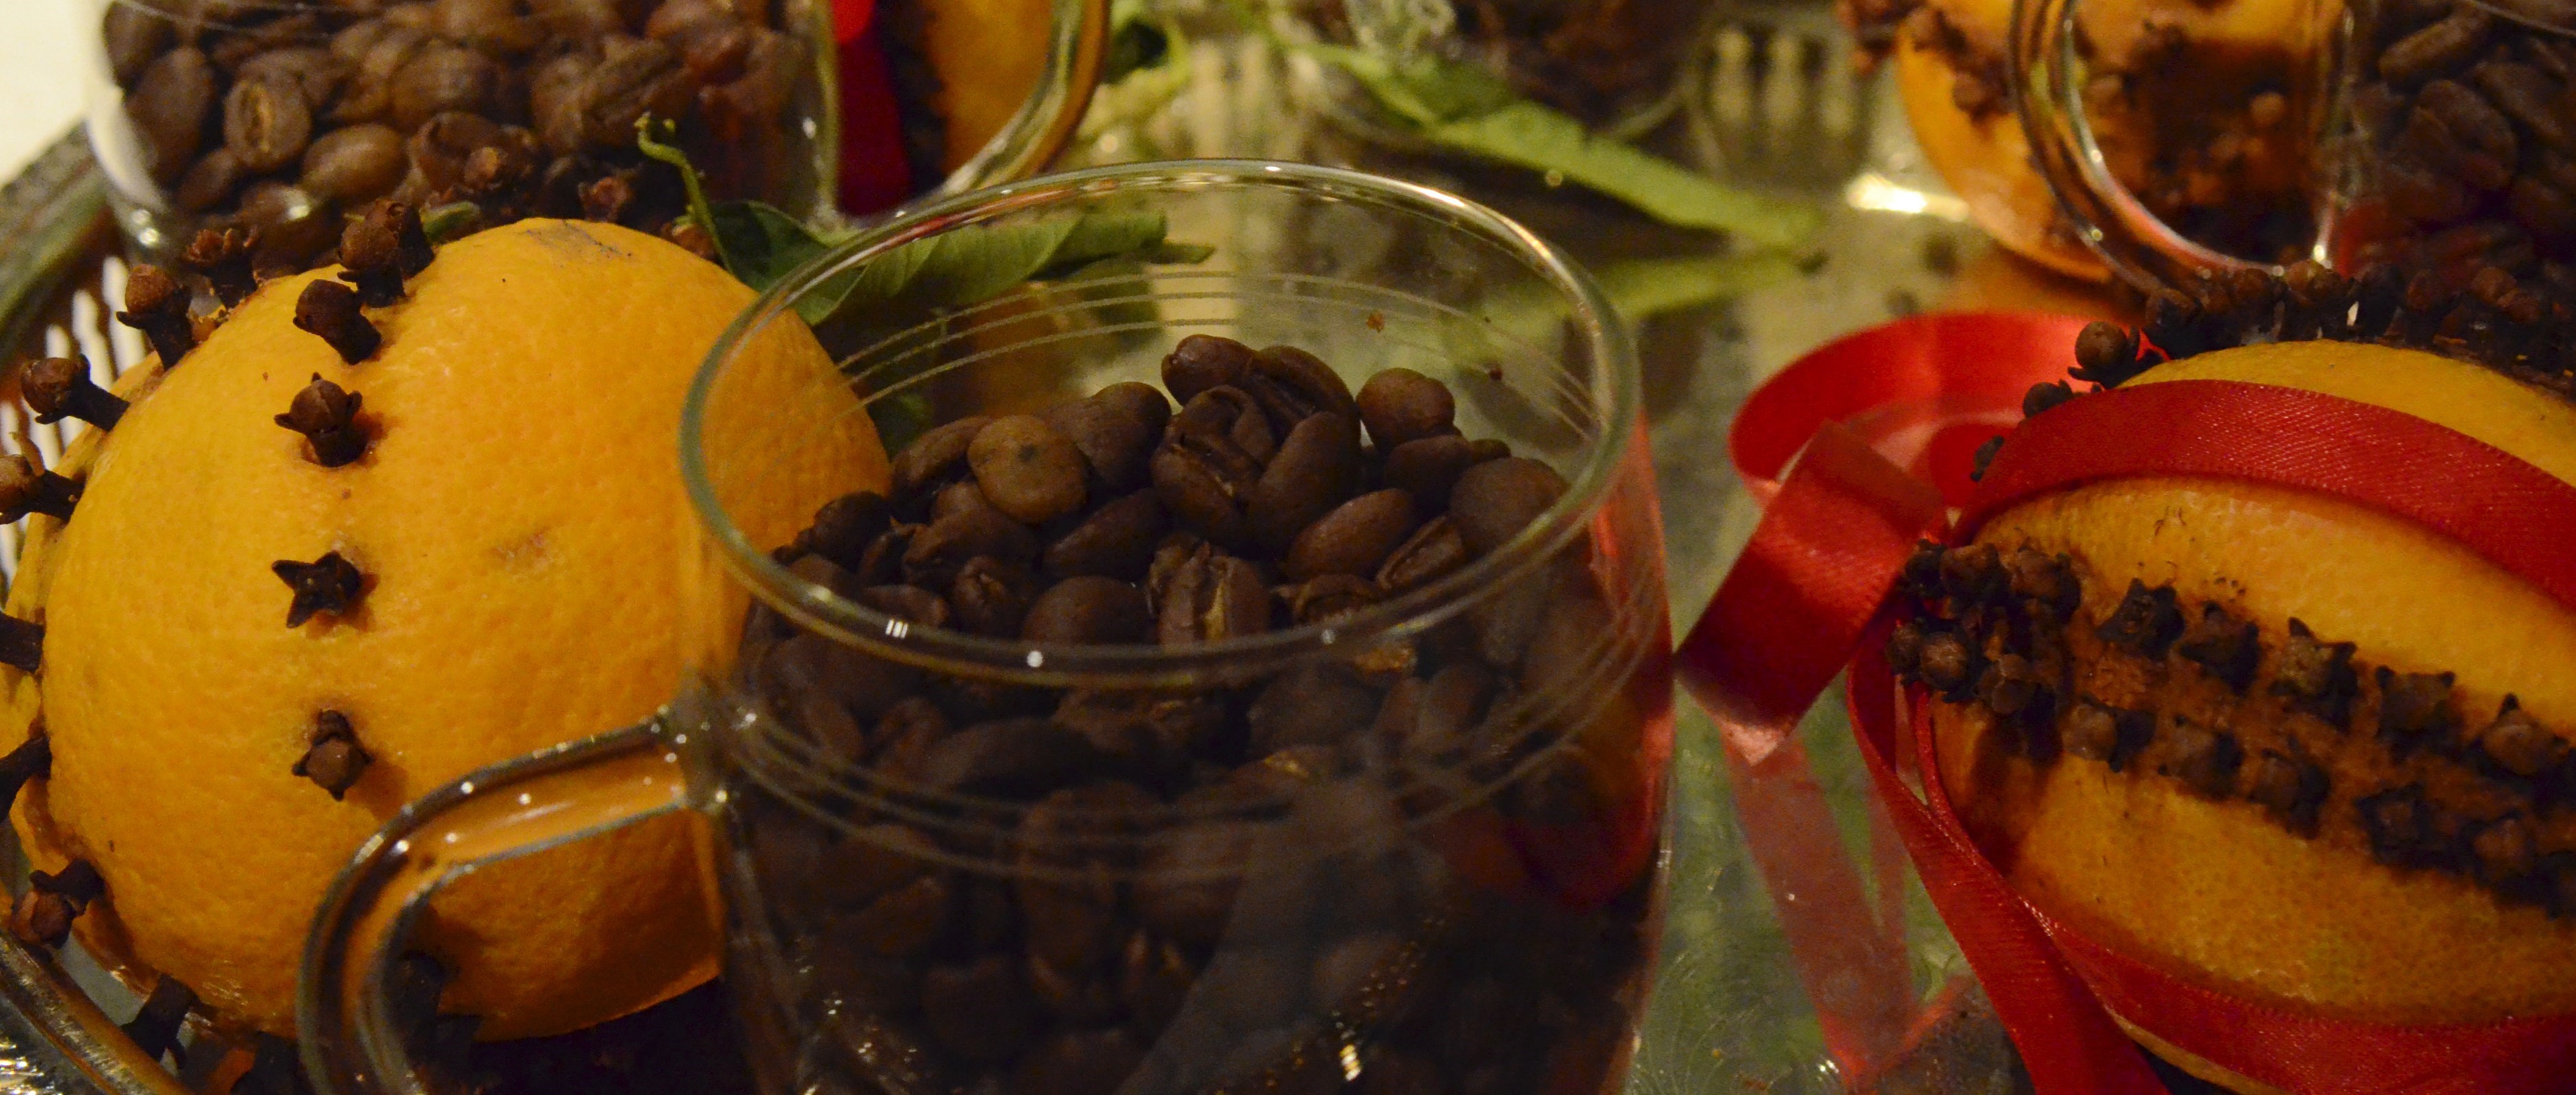 kaffebönor i glas på silverfat med juldekorerade nejlikapelsiner